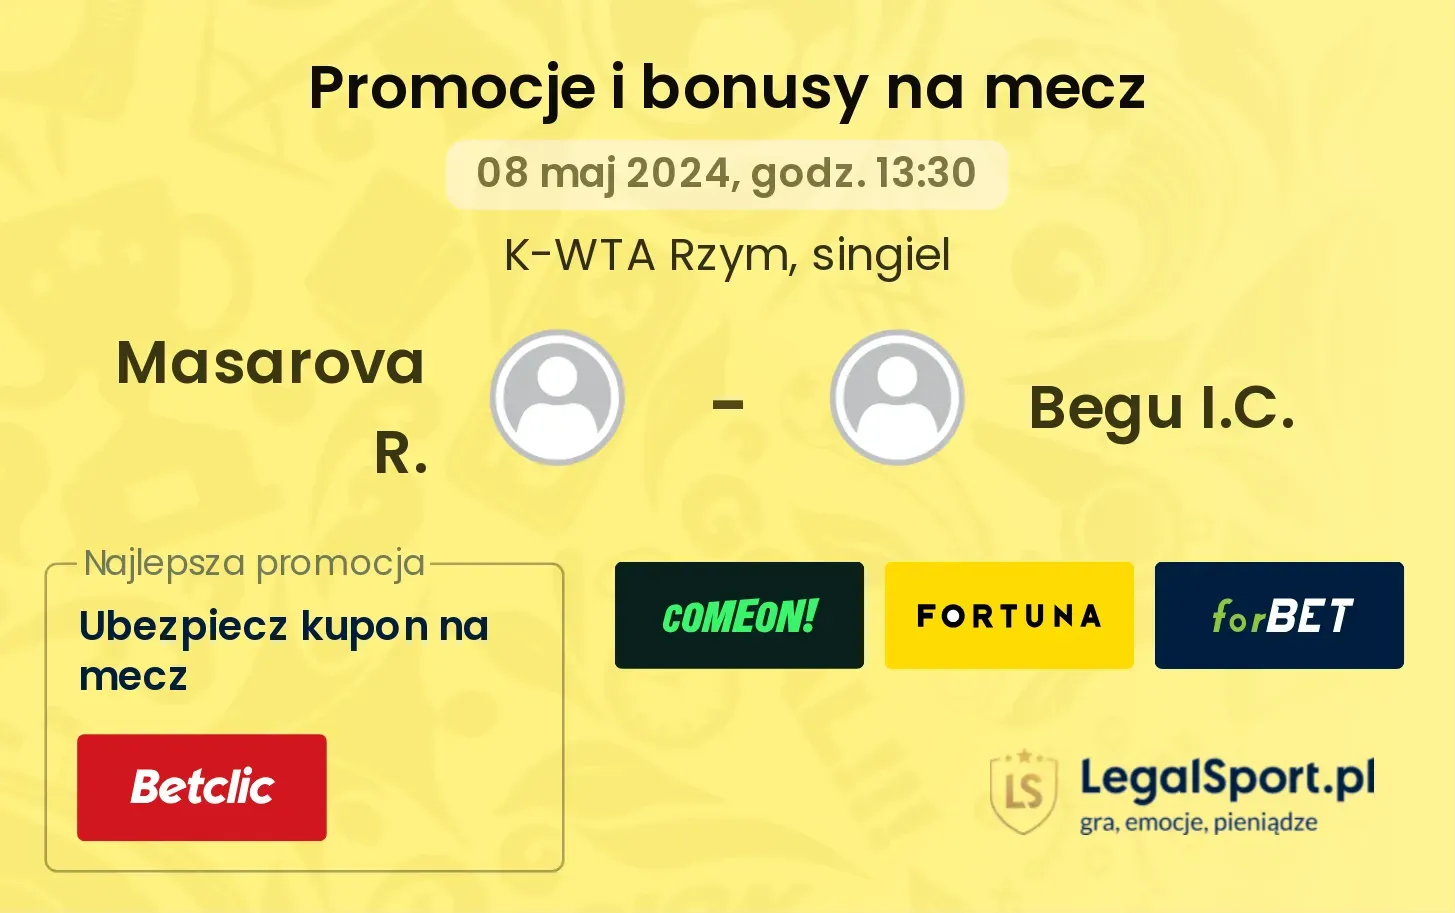 Masarova R. - Begu I.C. promocje bonusy na mecz